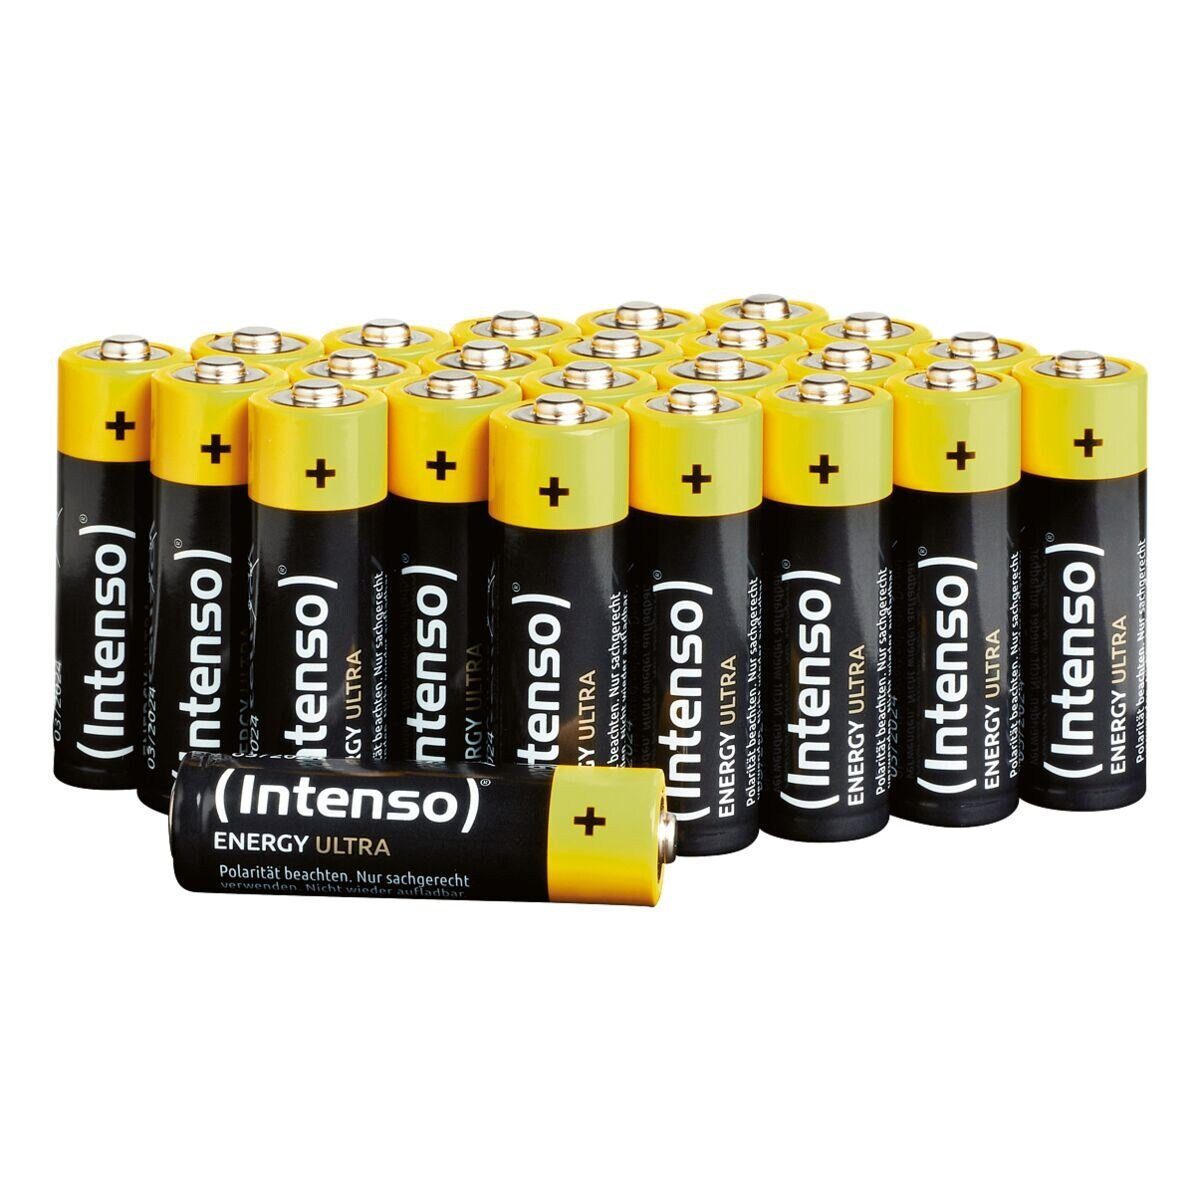 Intenso Energy Ultra V, V, 24 St), 1,5 LR6 (1.5 Alkali / AA Mignon / / LR06, Batterie